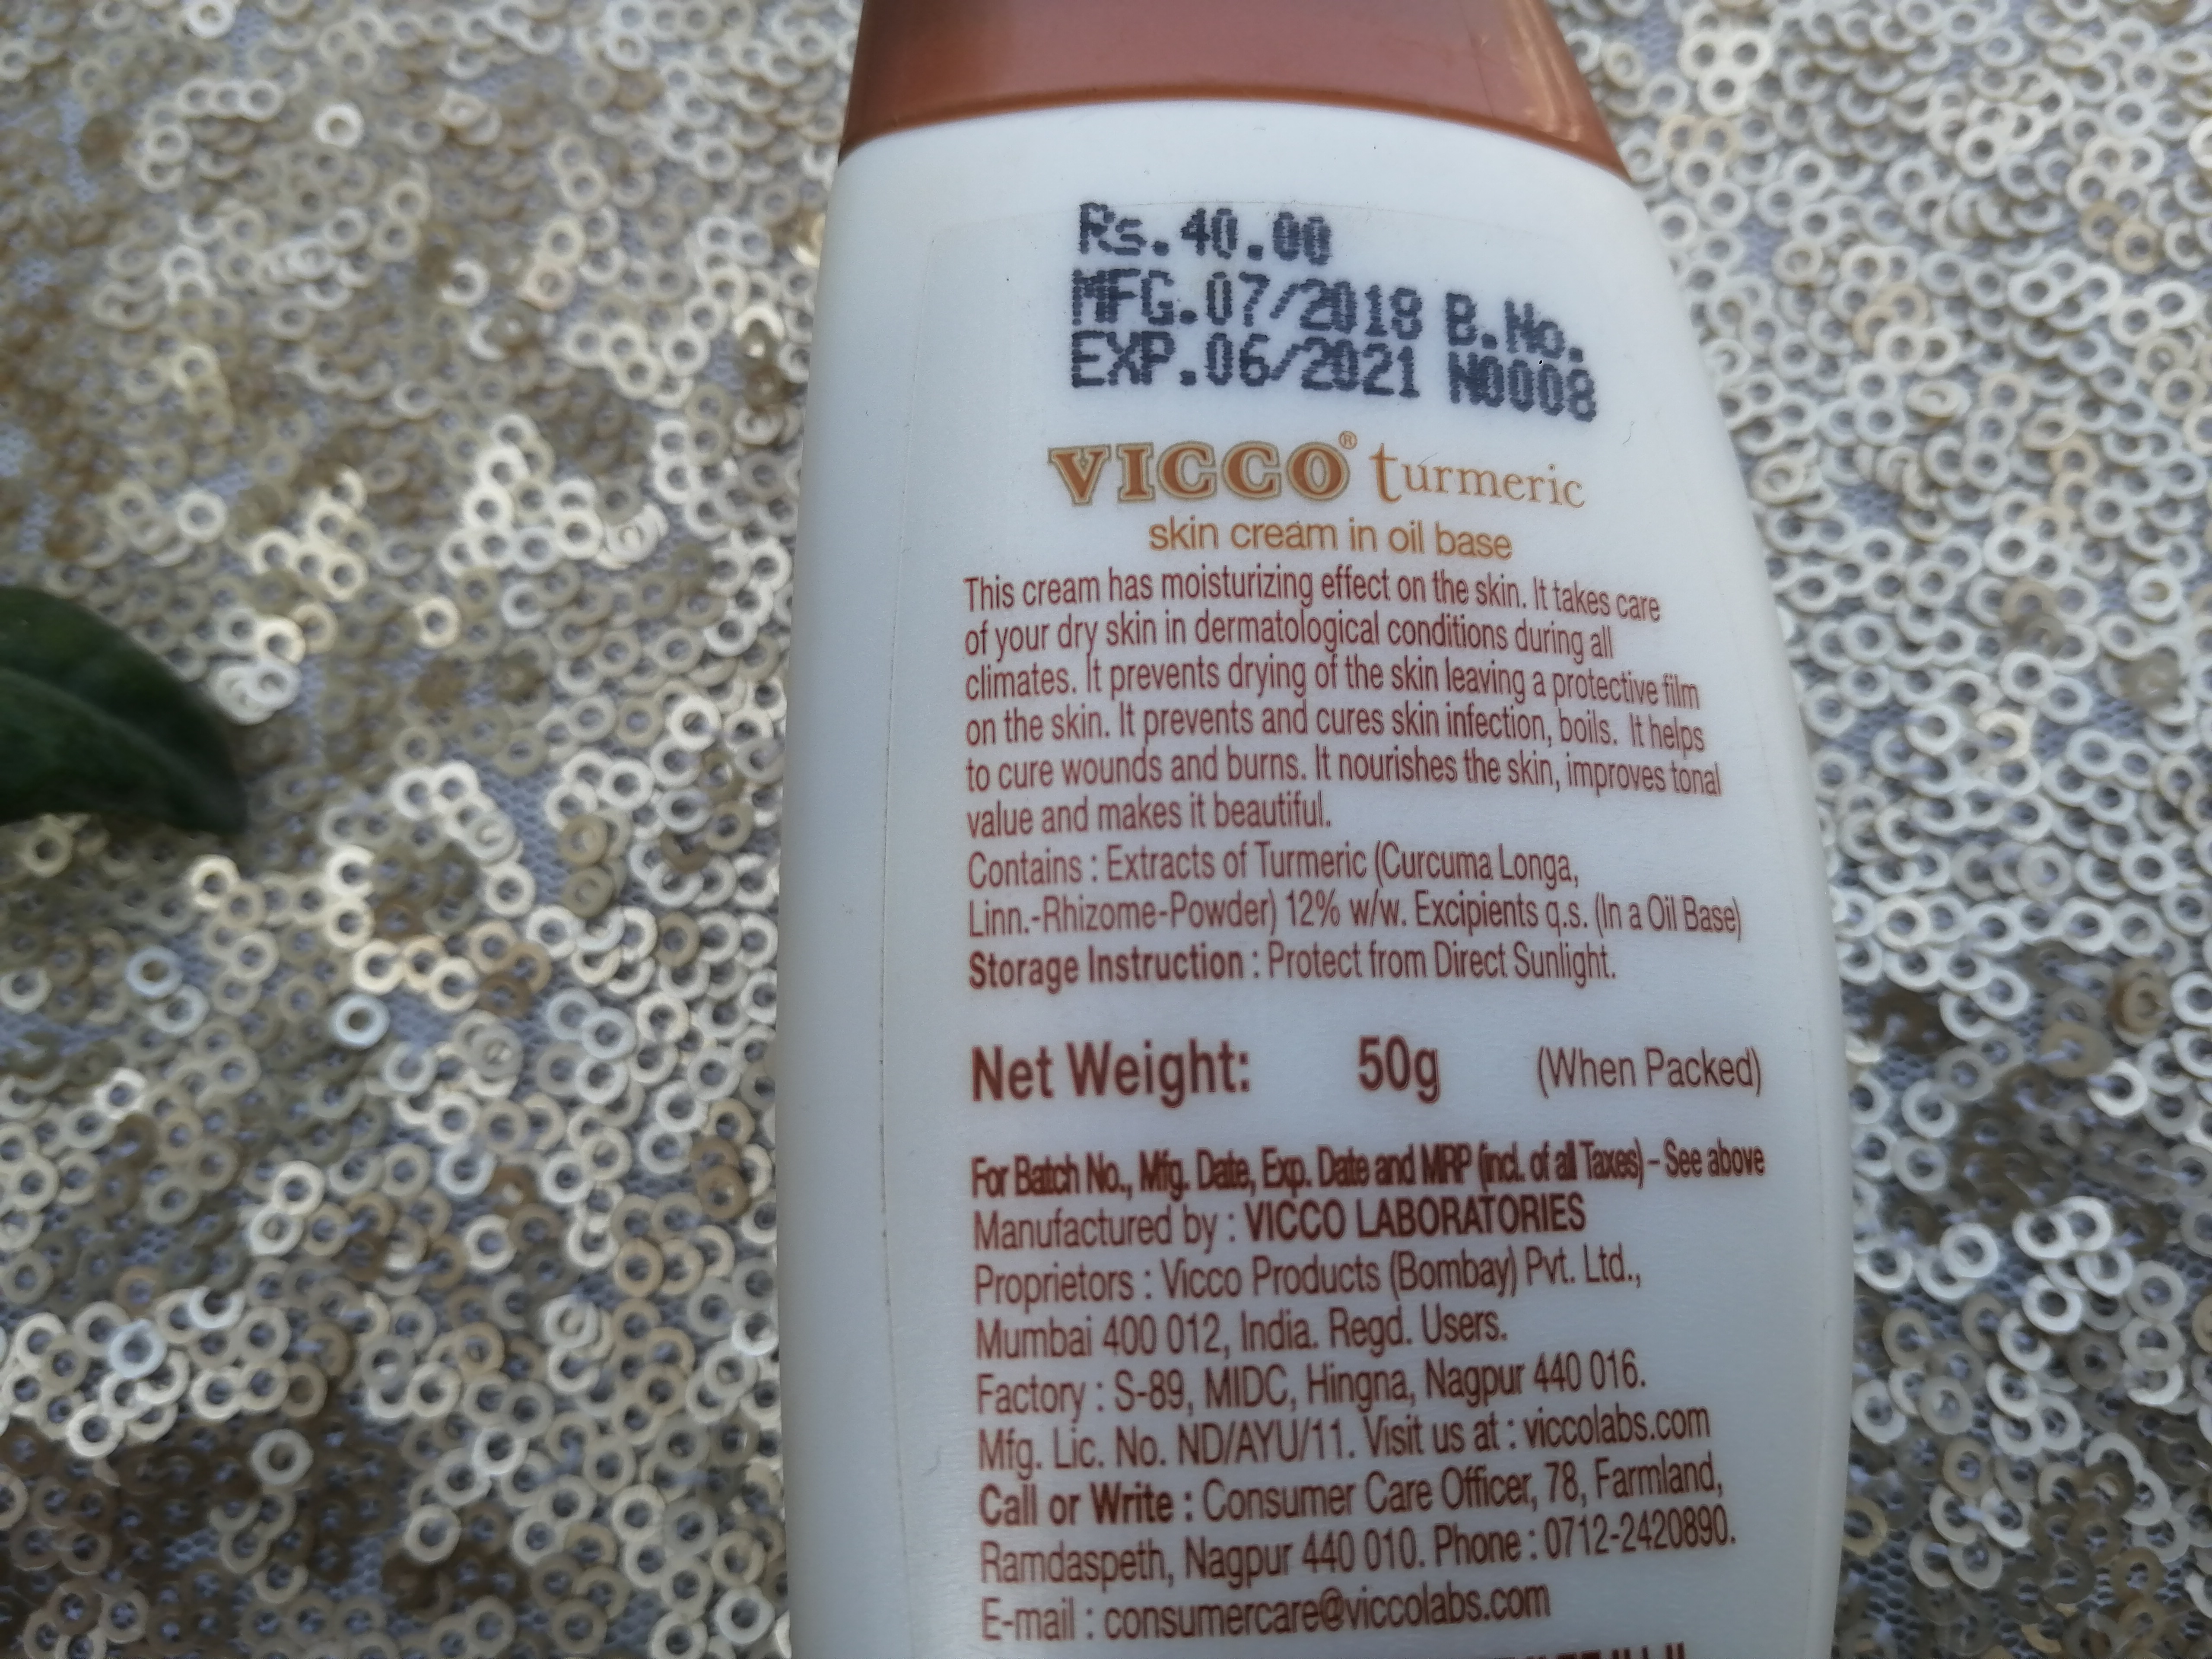 VICCO Turmeric Skin Cream in Oil Base| Review